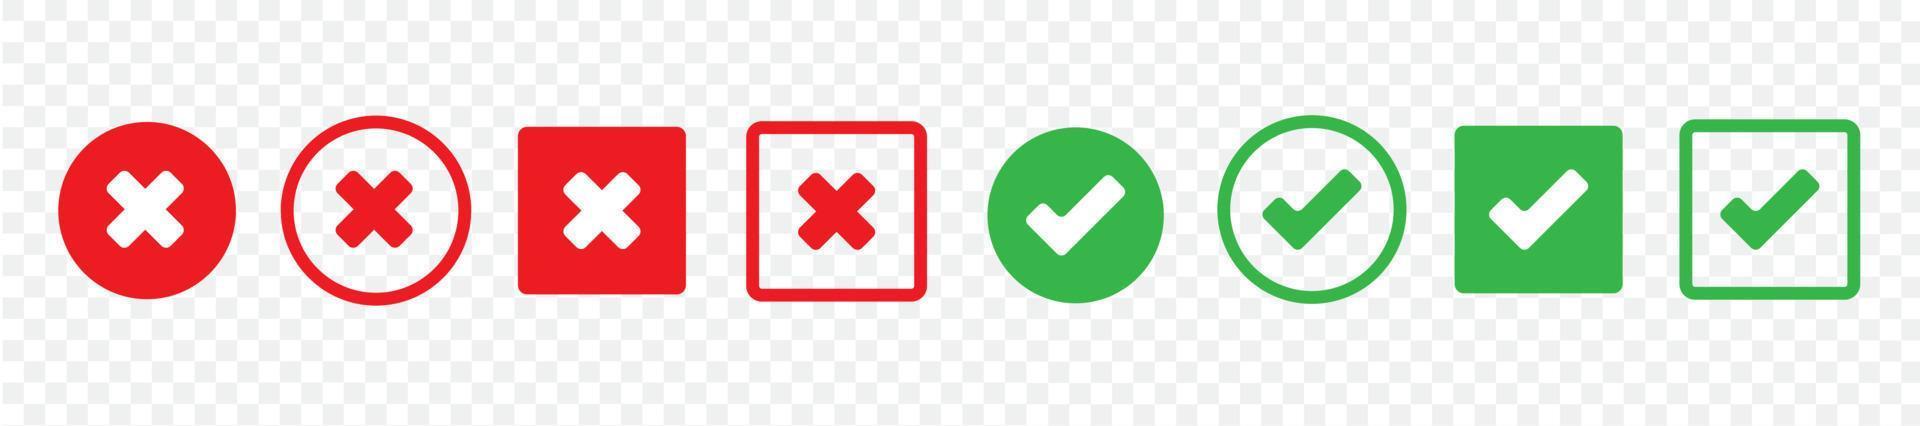 definir marcas de seleção verdes e cruzes vermelhas de botões simples da web. círculo e quadrado. grande coleção de botões planos. vetor